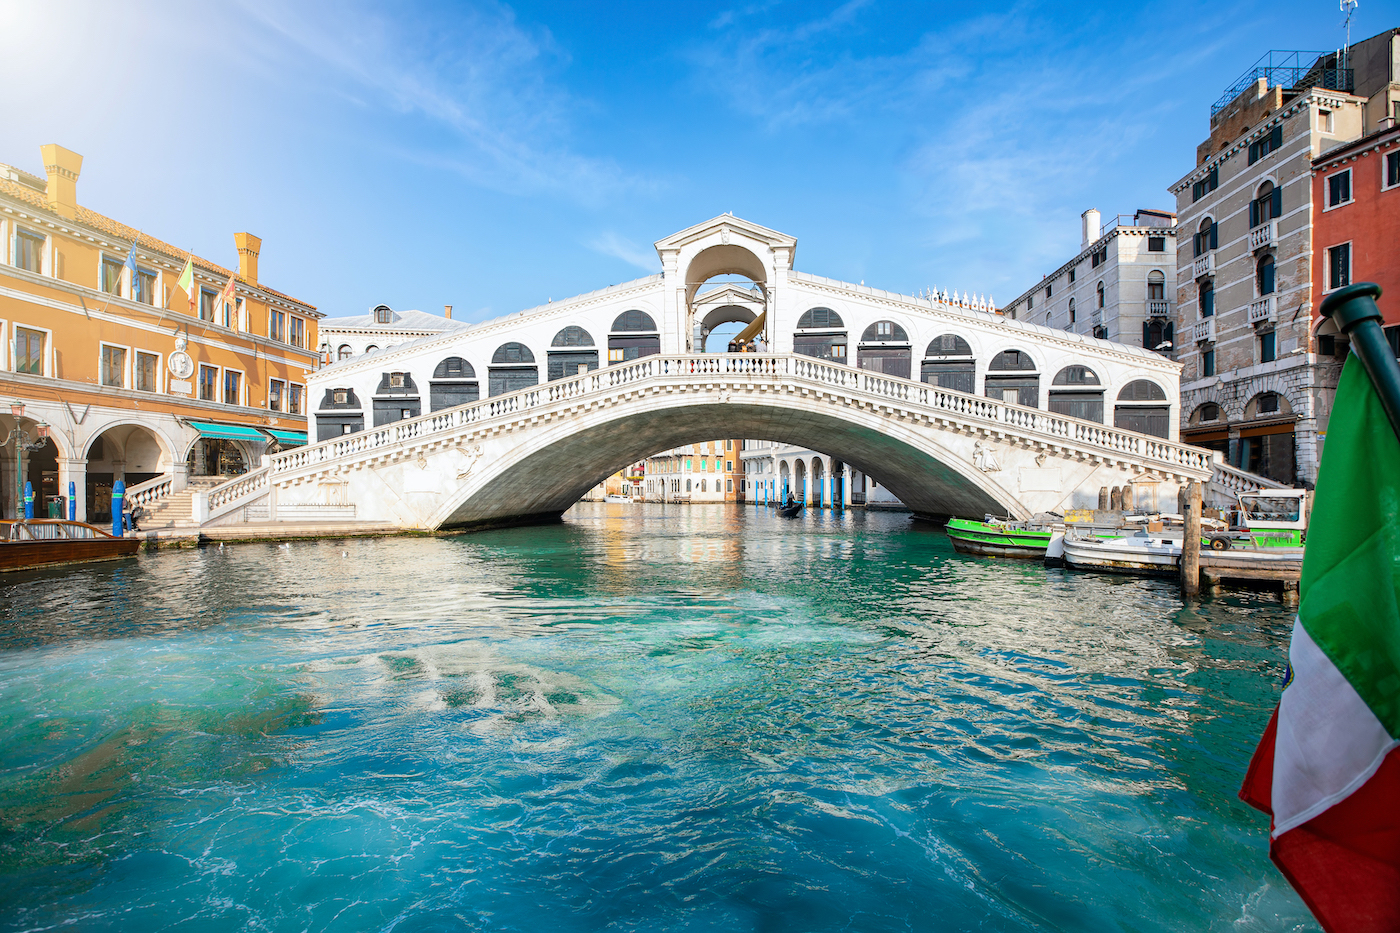 Lege straten en schone kanalen in Venetië tijdens de coronacrisis